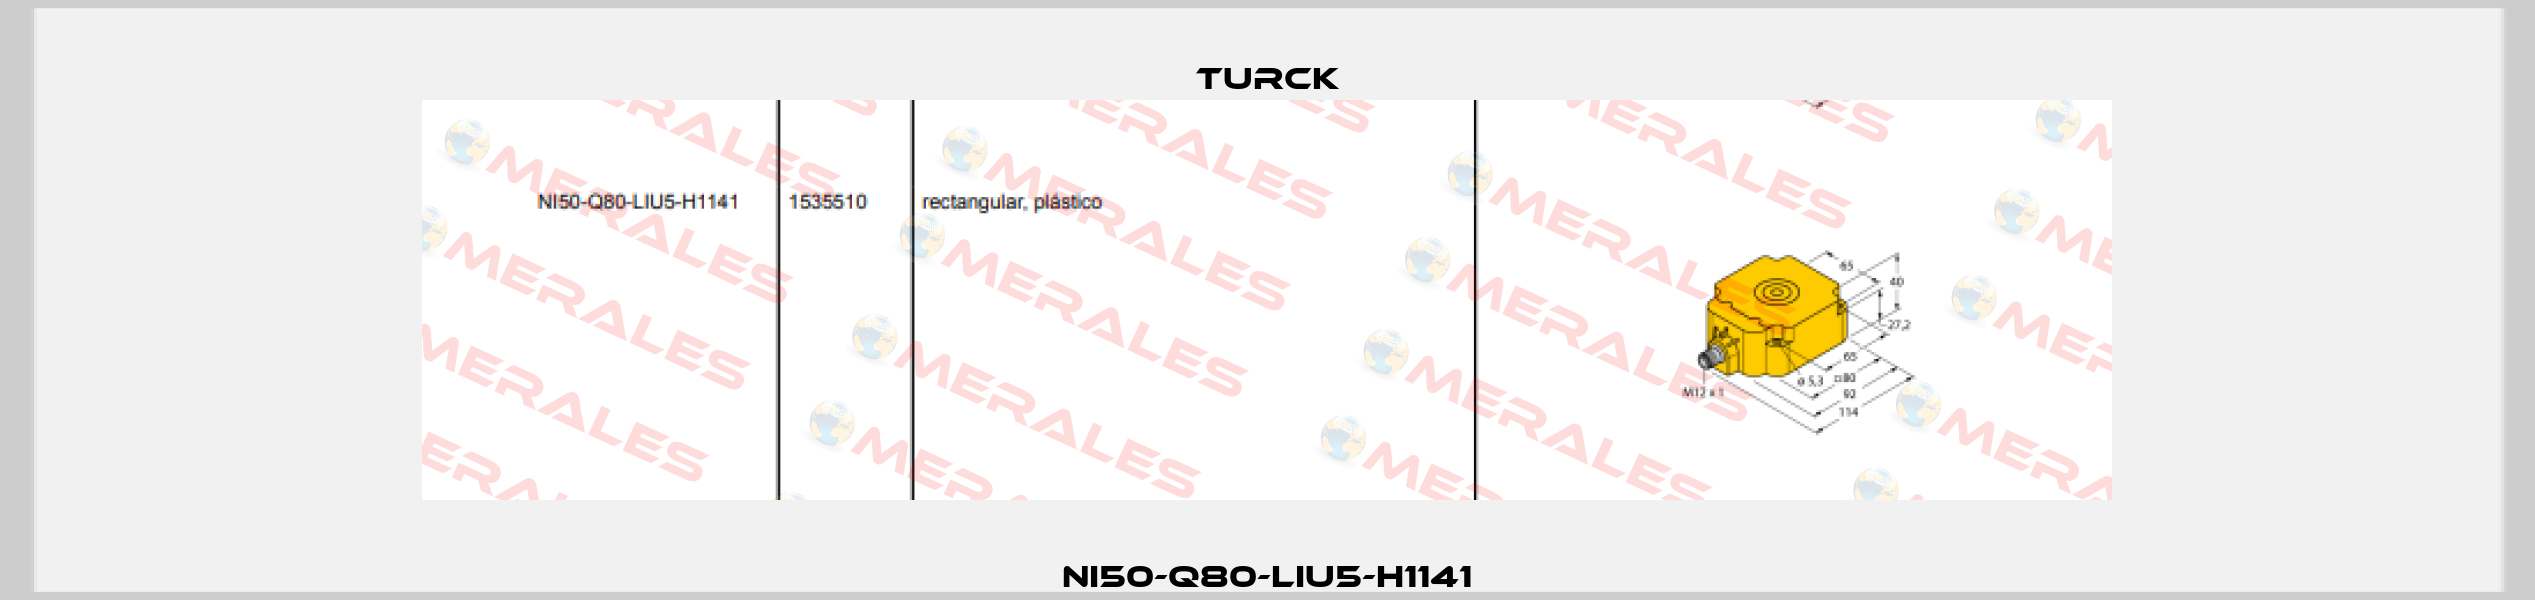 NI50-Q80-LIU5-H1141 Turck